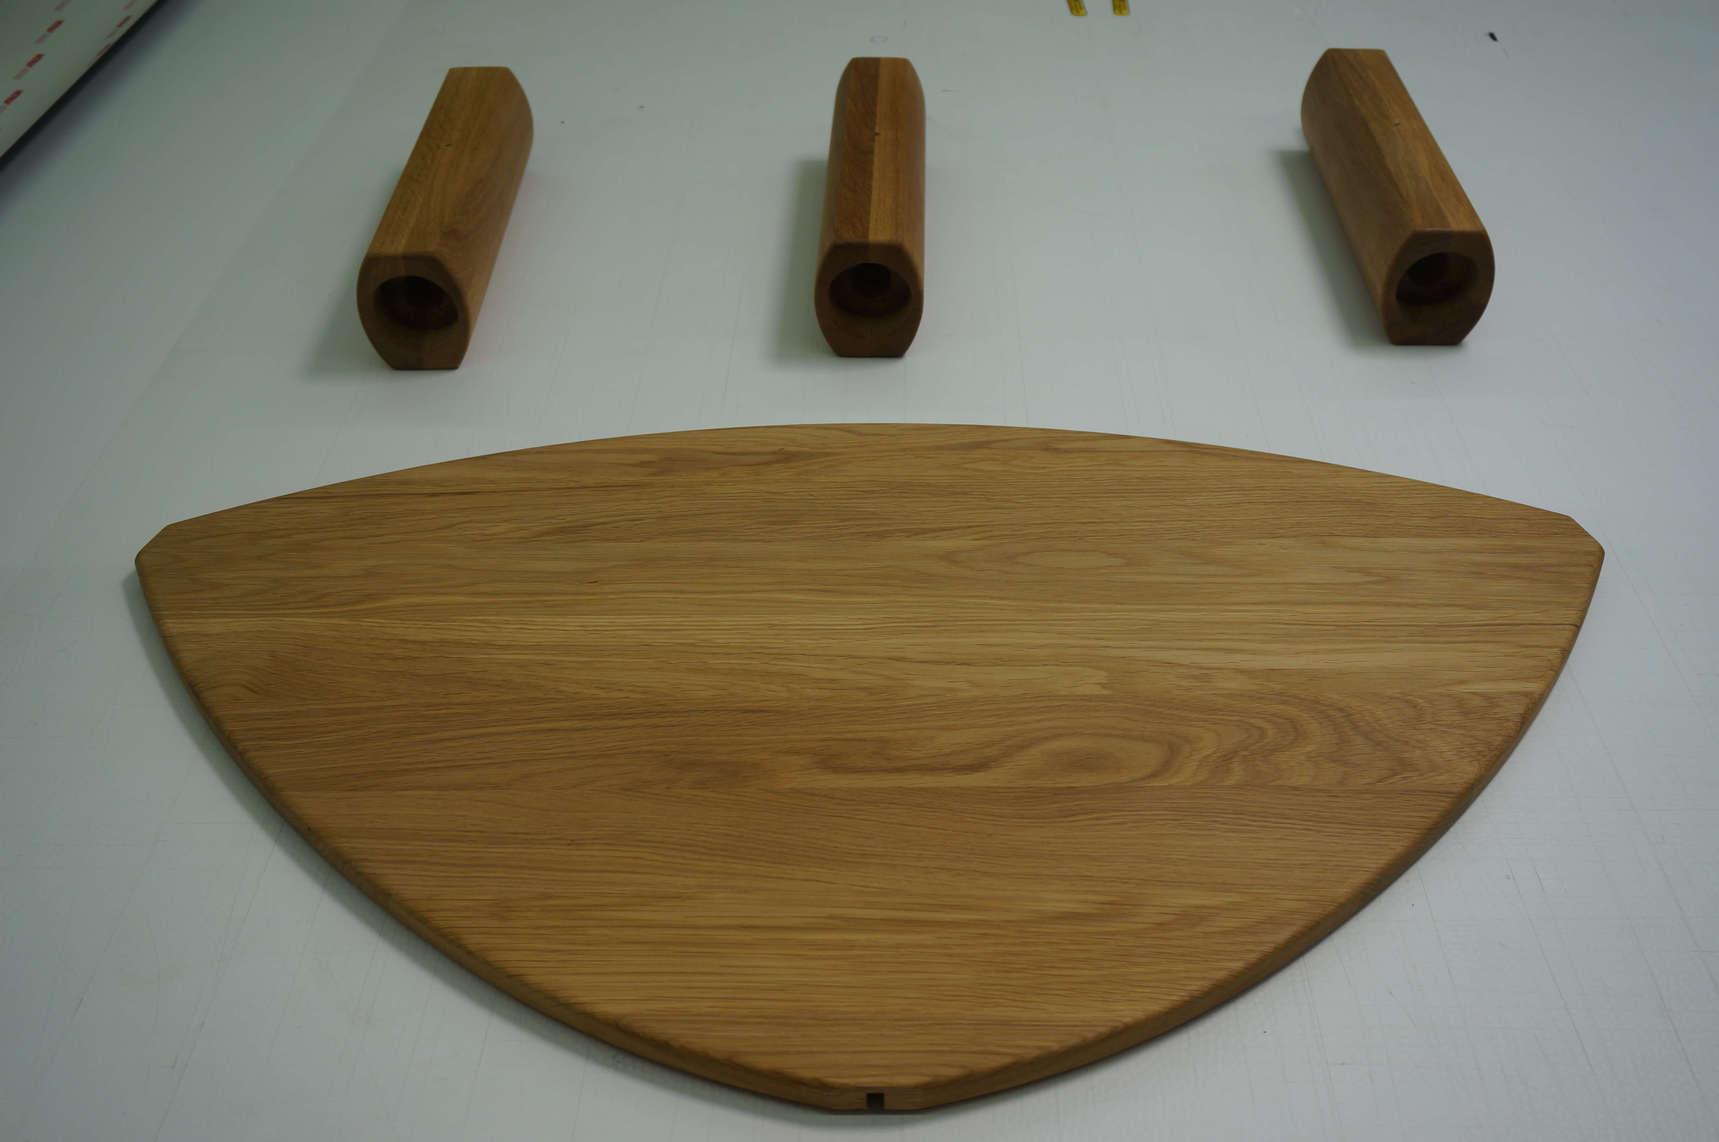 resimdo Wohnzimmer Beistelltisch Holz Folie W671  Rustic Indoor Plank Beispiel